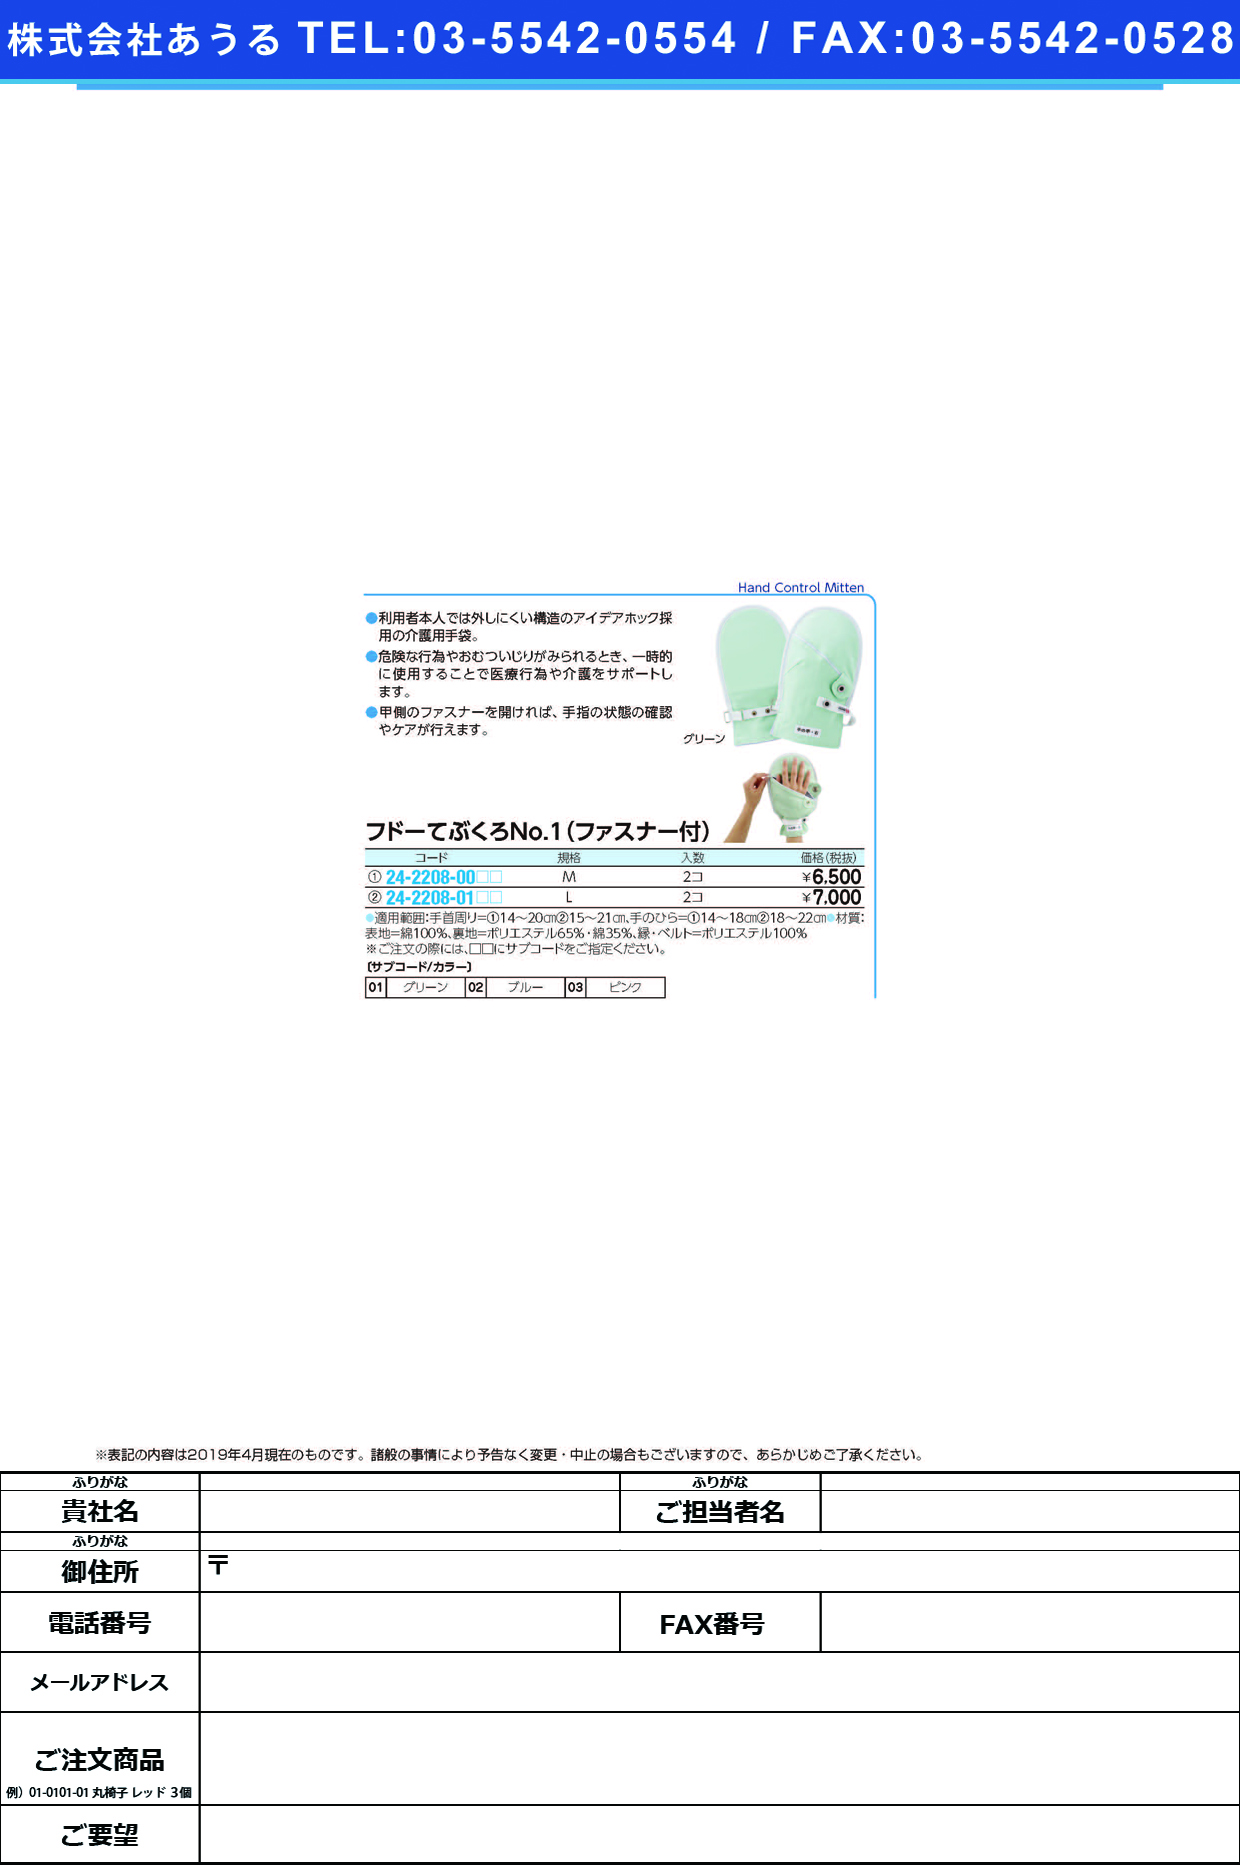 (24-2208-00)フドーてぶくろＮｏ．１ファスナー付 M(2ﾏｲｲﾘ) ﾌﾄﾞｰﾃﾌﾞｸﾛNO1ﾌｧｽﾅｰﾂｷ ブルー【1双単位】【2019年カタログ商品】